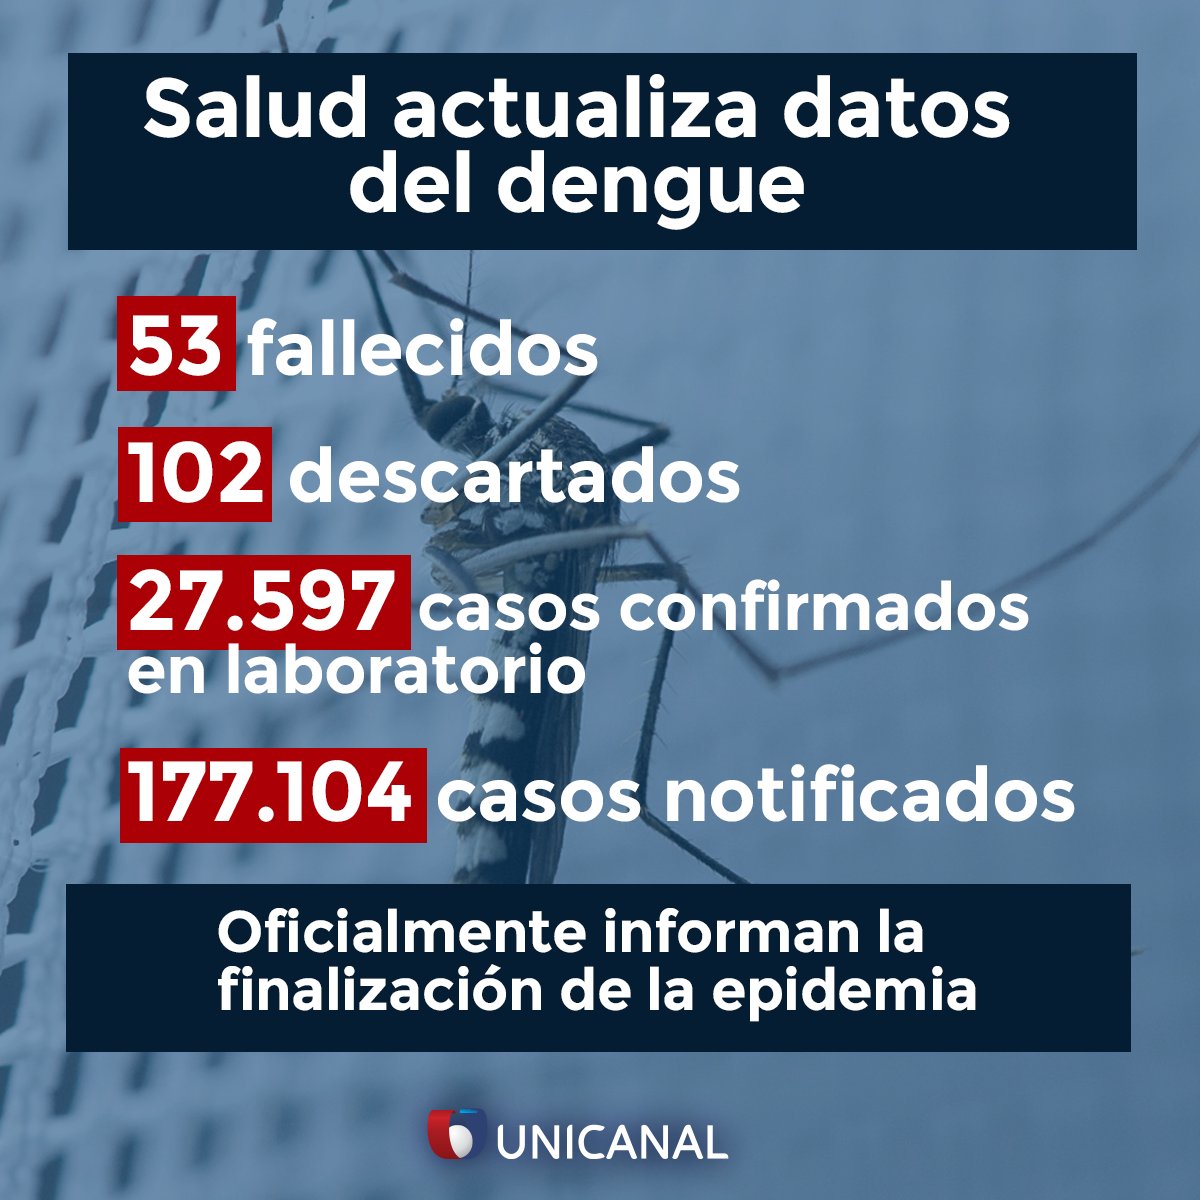 Últimos datos del dengue en Paraguay. Fuente: Unicanal